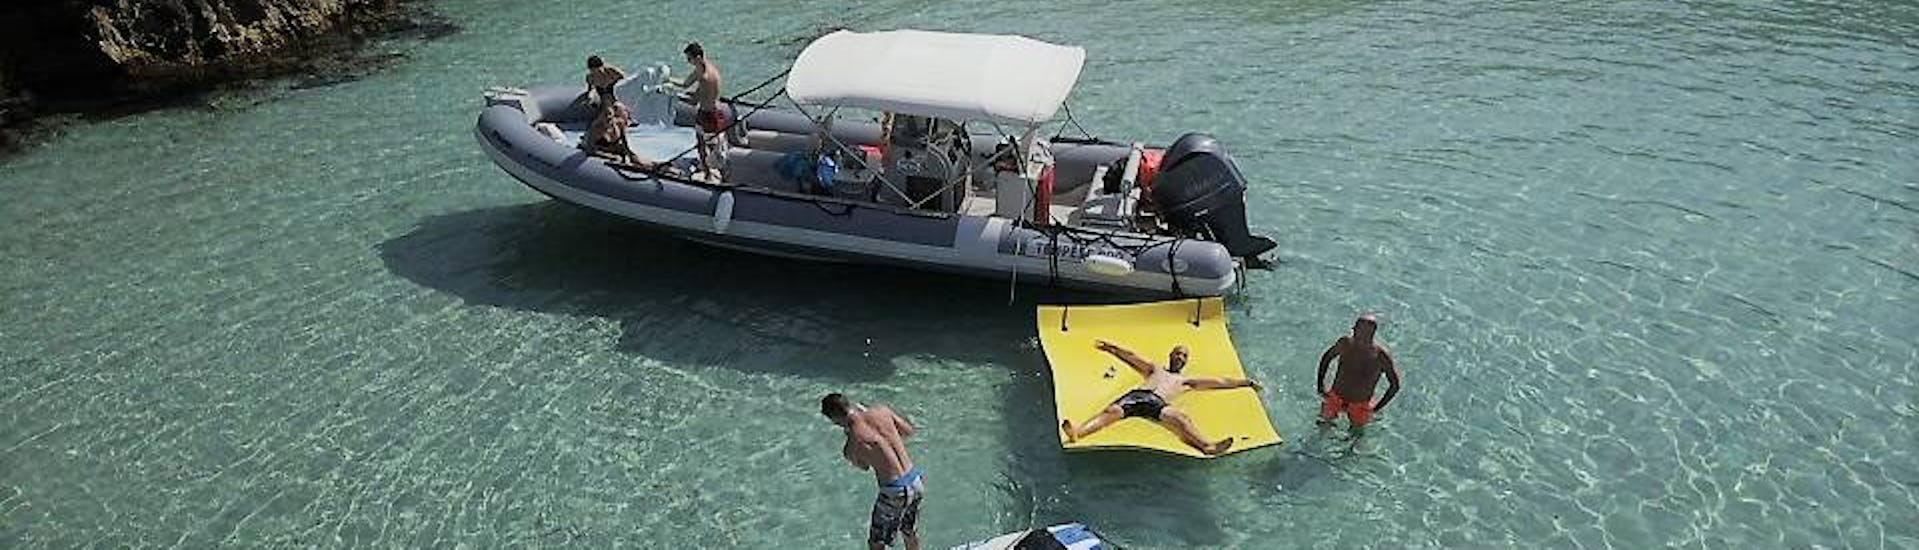 Barca con persone nell'acqua di una baia che praticano stand-up paddling, snorkeling e nuoto durante la gita in barca a Ibiza con snorkeling e open bar di Arenal Diving & Boat Trips Ibiza.